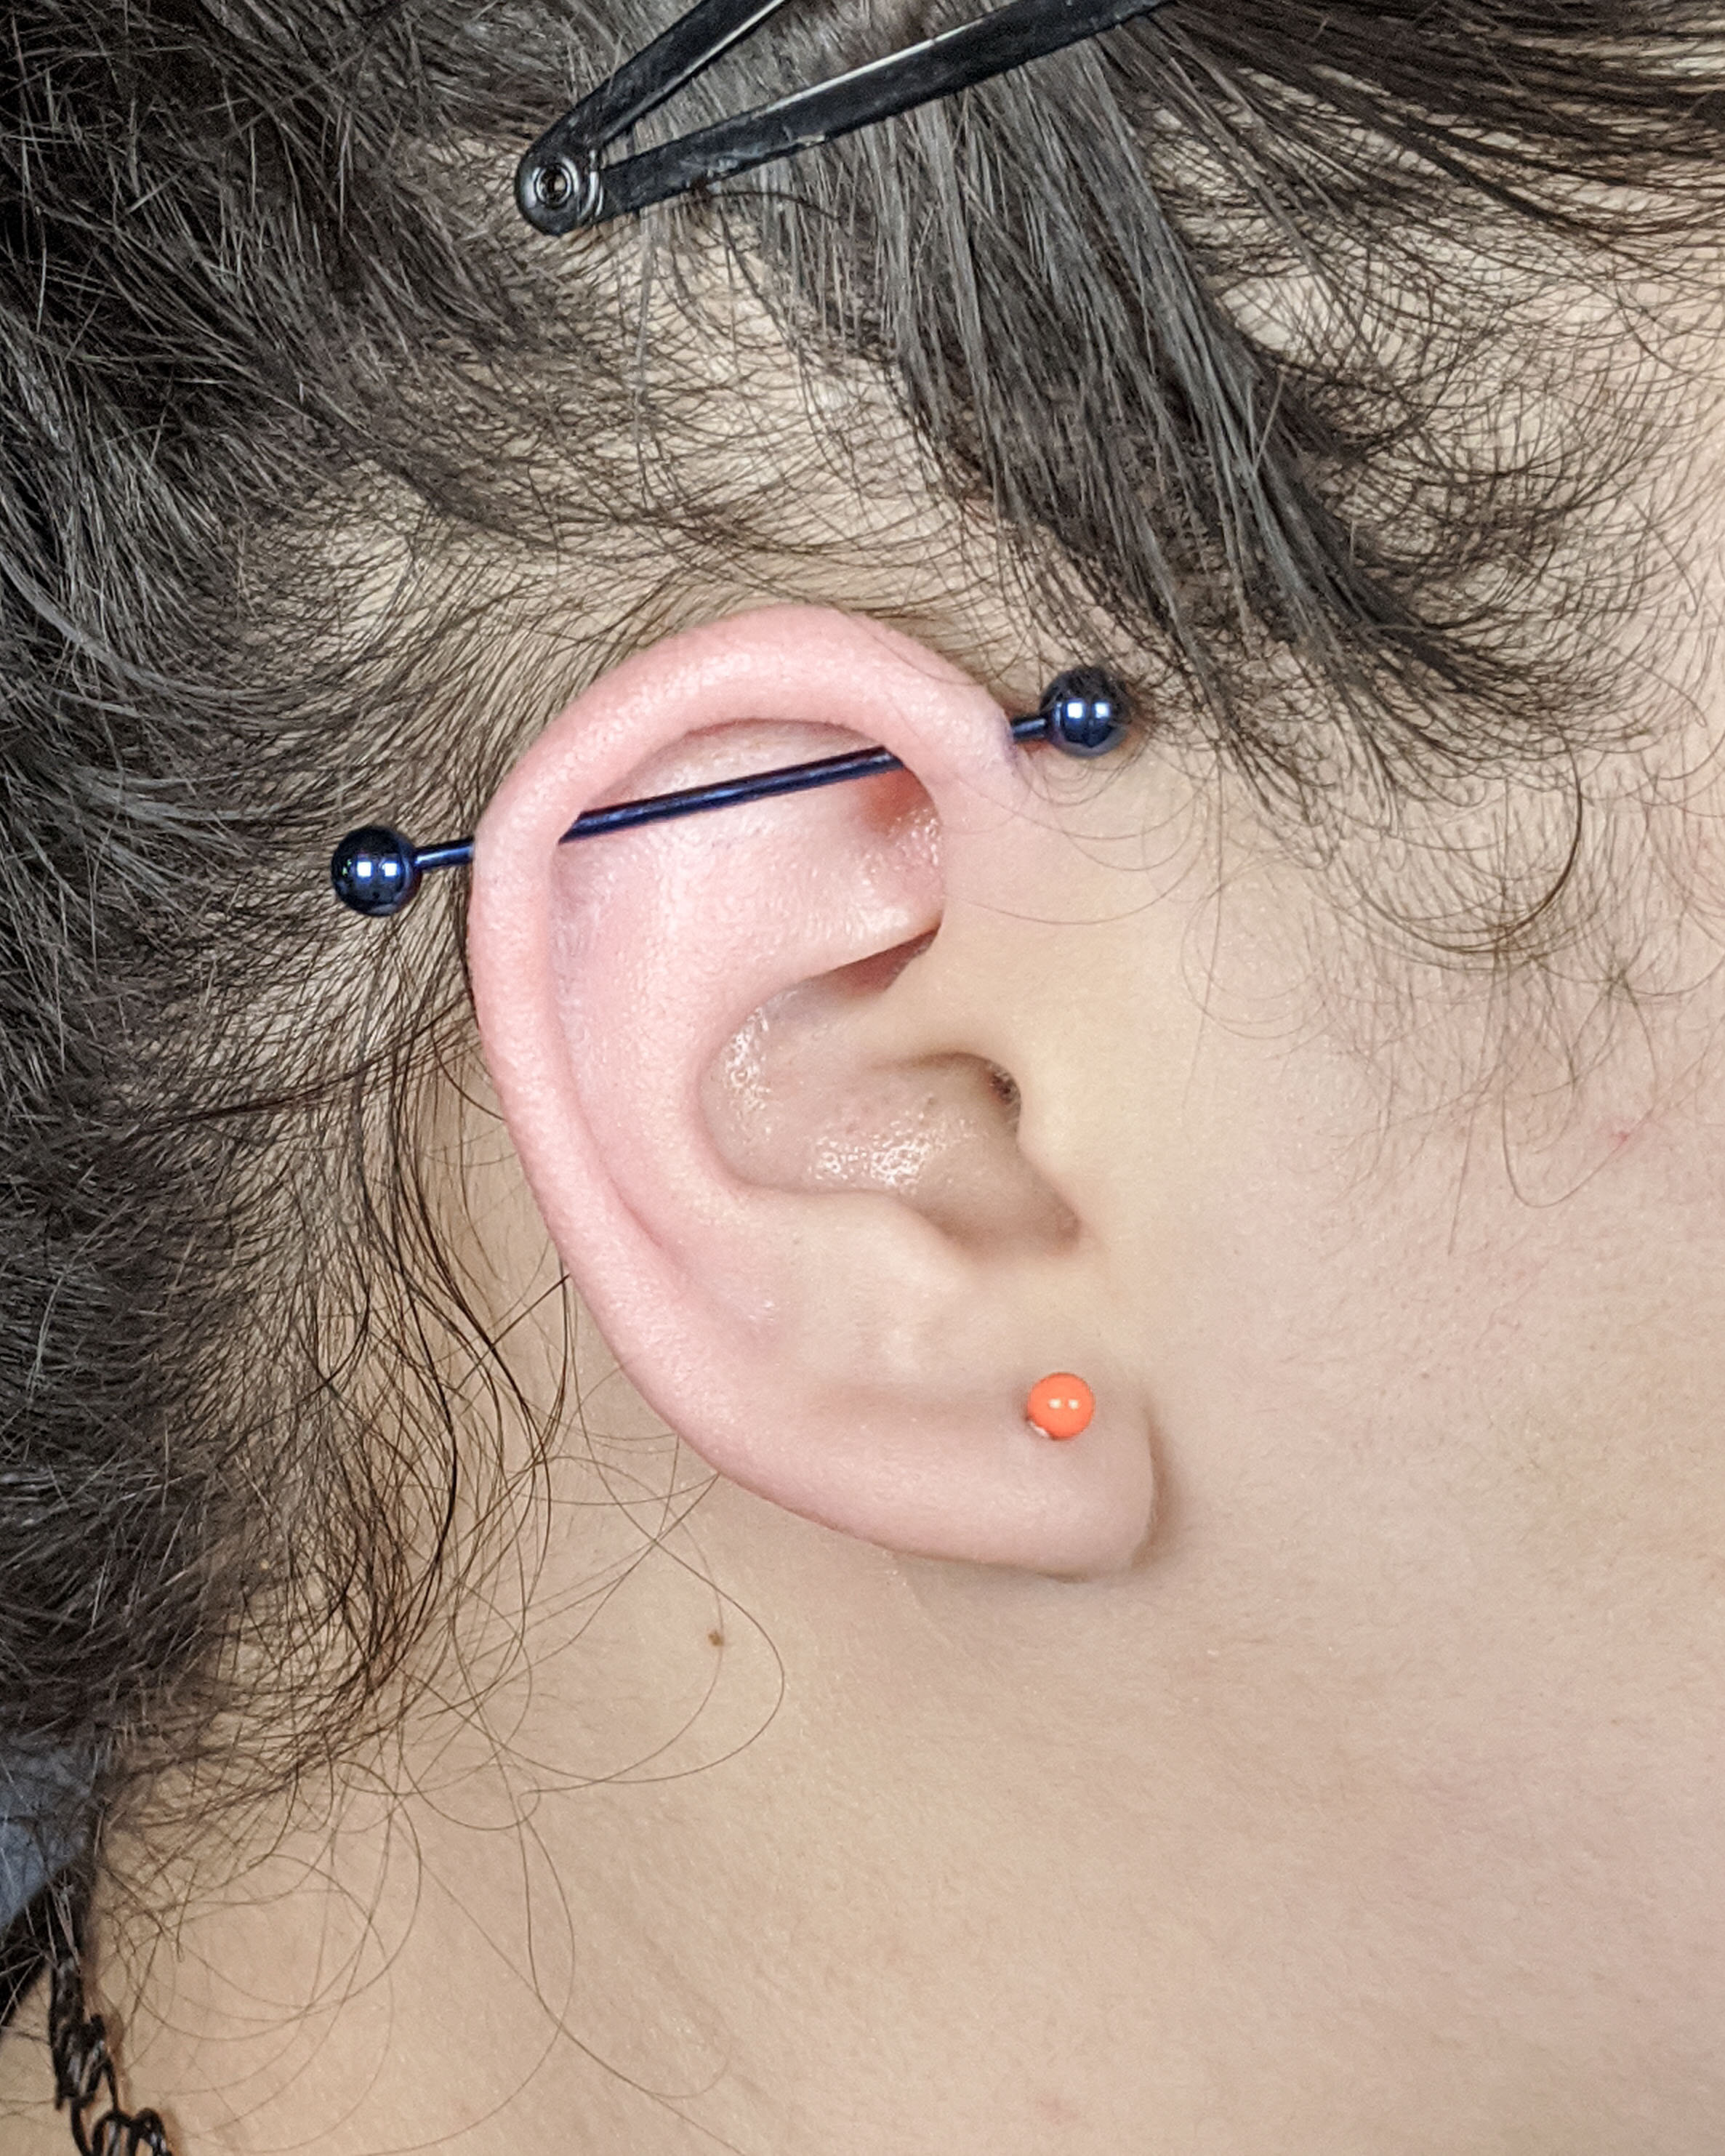 Ear Piercings, Naval Piercings & Nose Piercings in Mesa